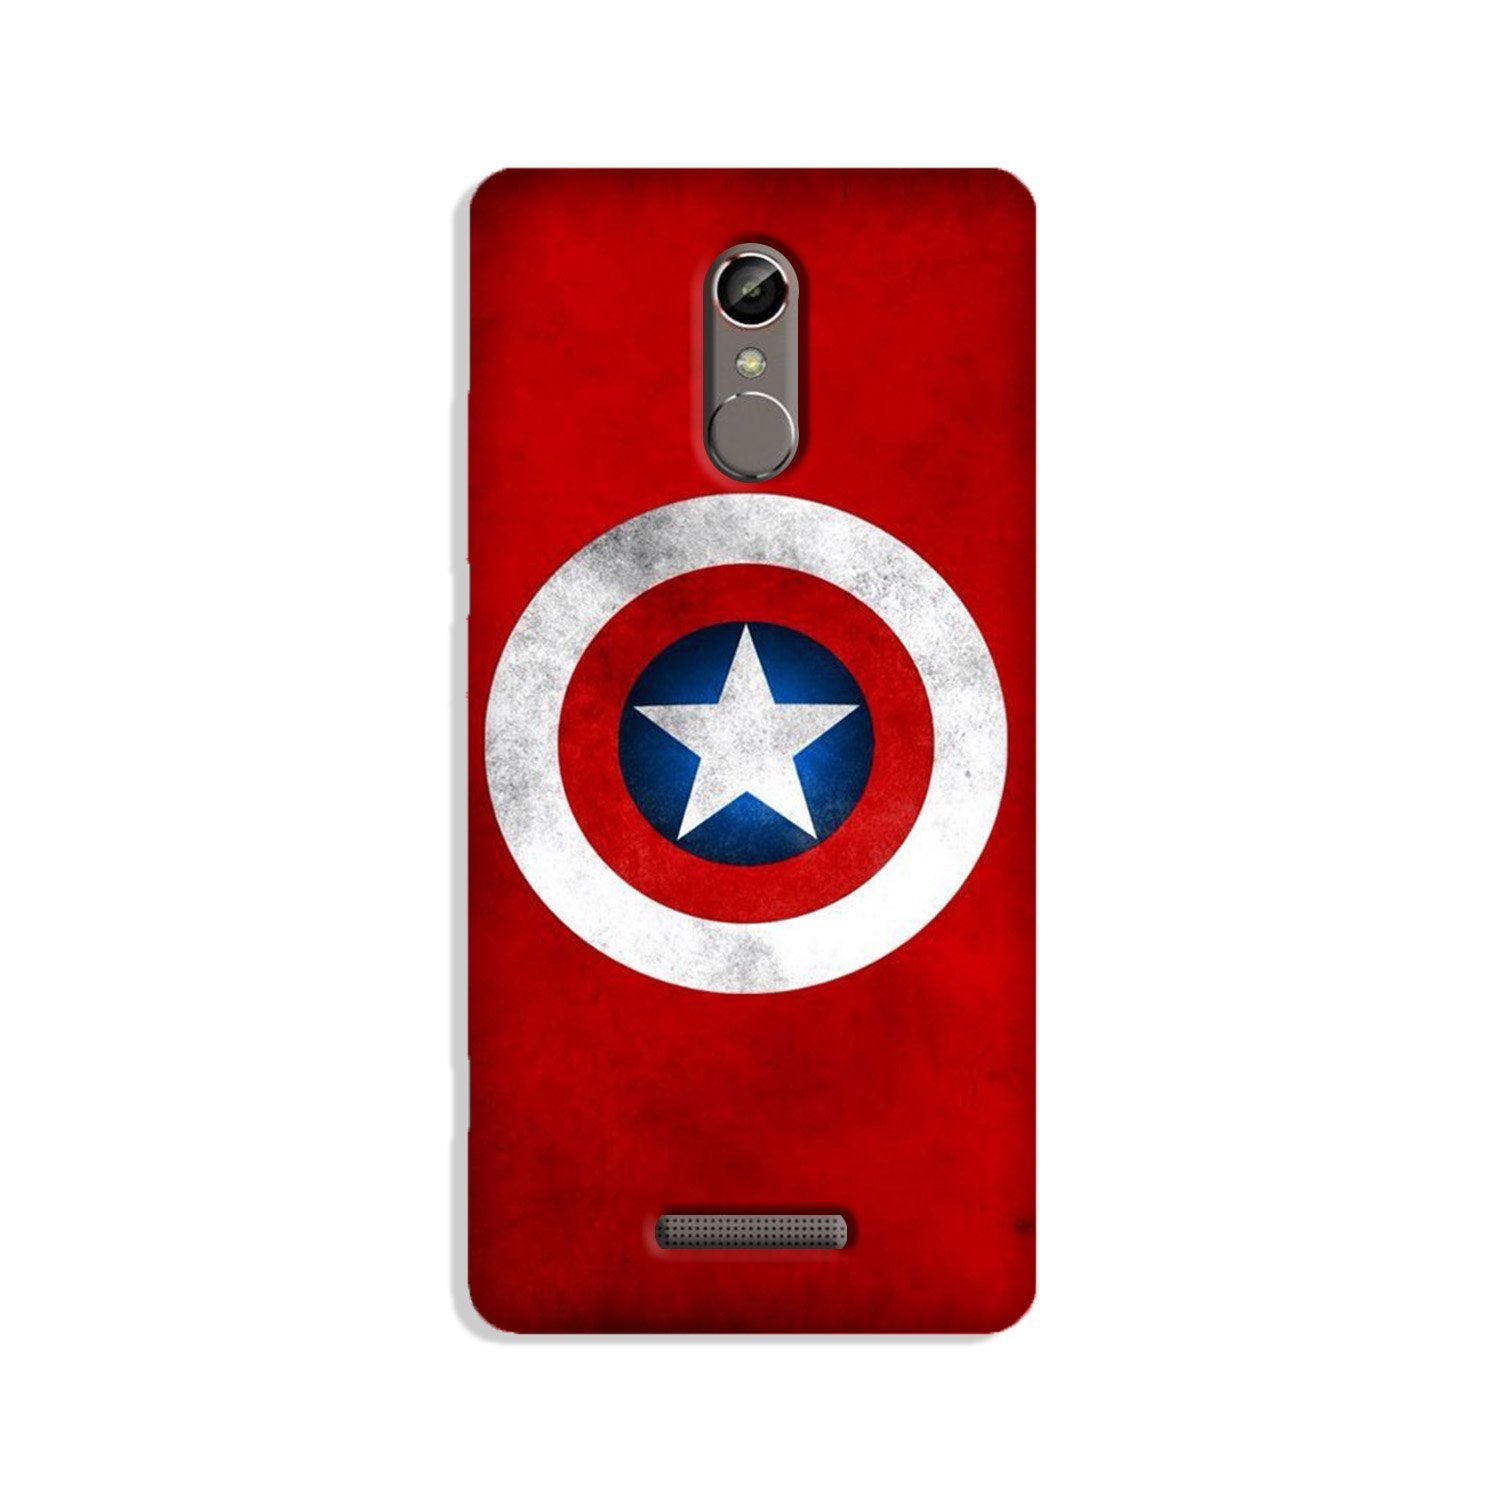 Captain America Case for Gionee S6s (Design No. 249)